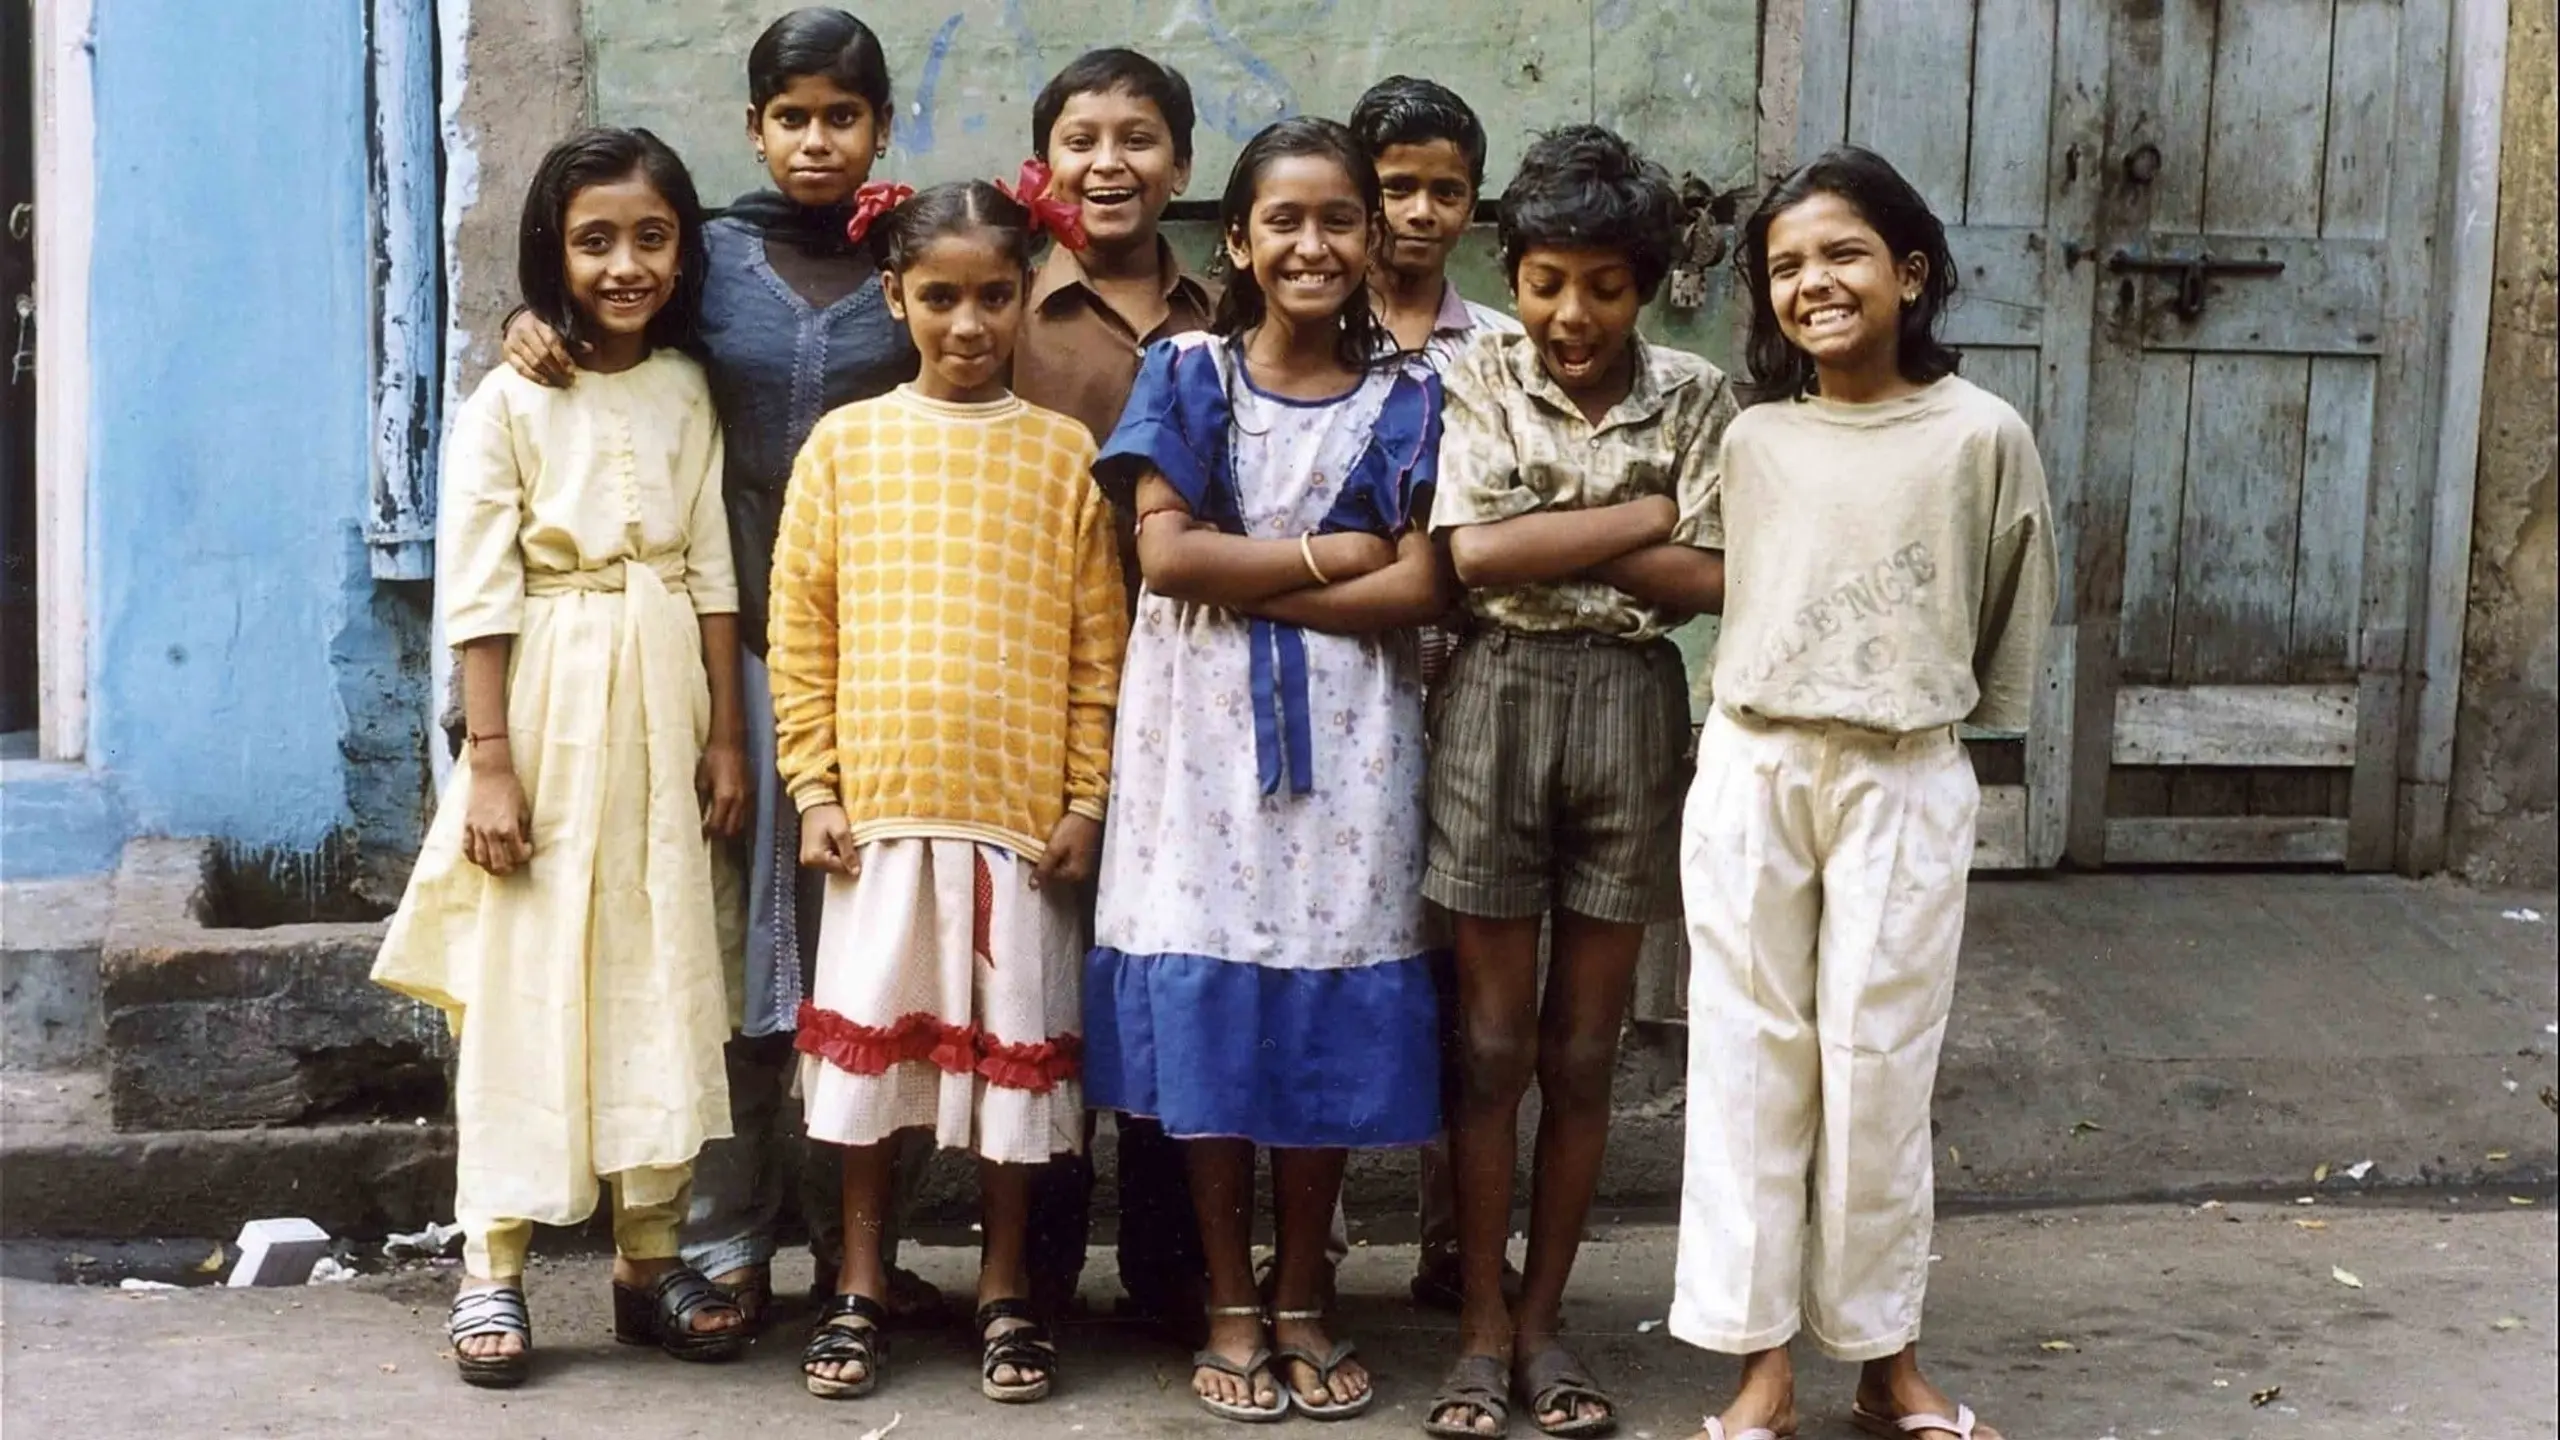 Im Bordell geboren - Kinder im Rotlichtviertel von Kalkutta